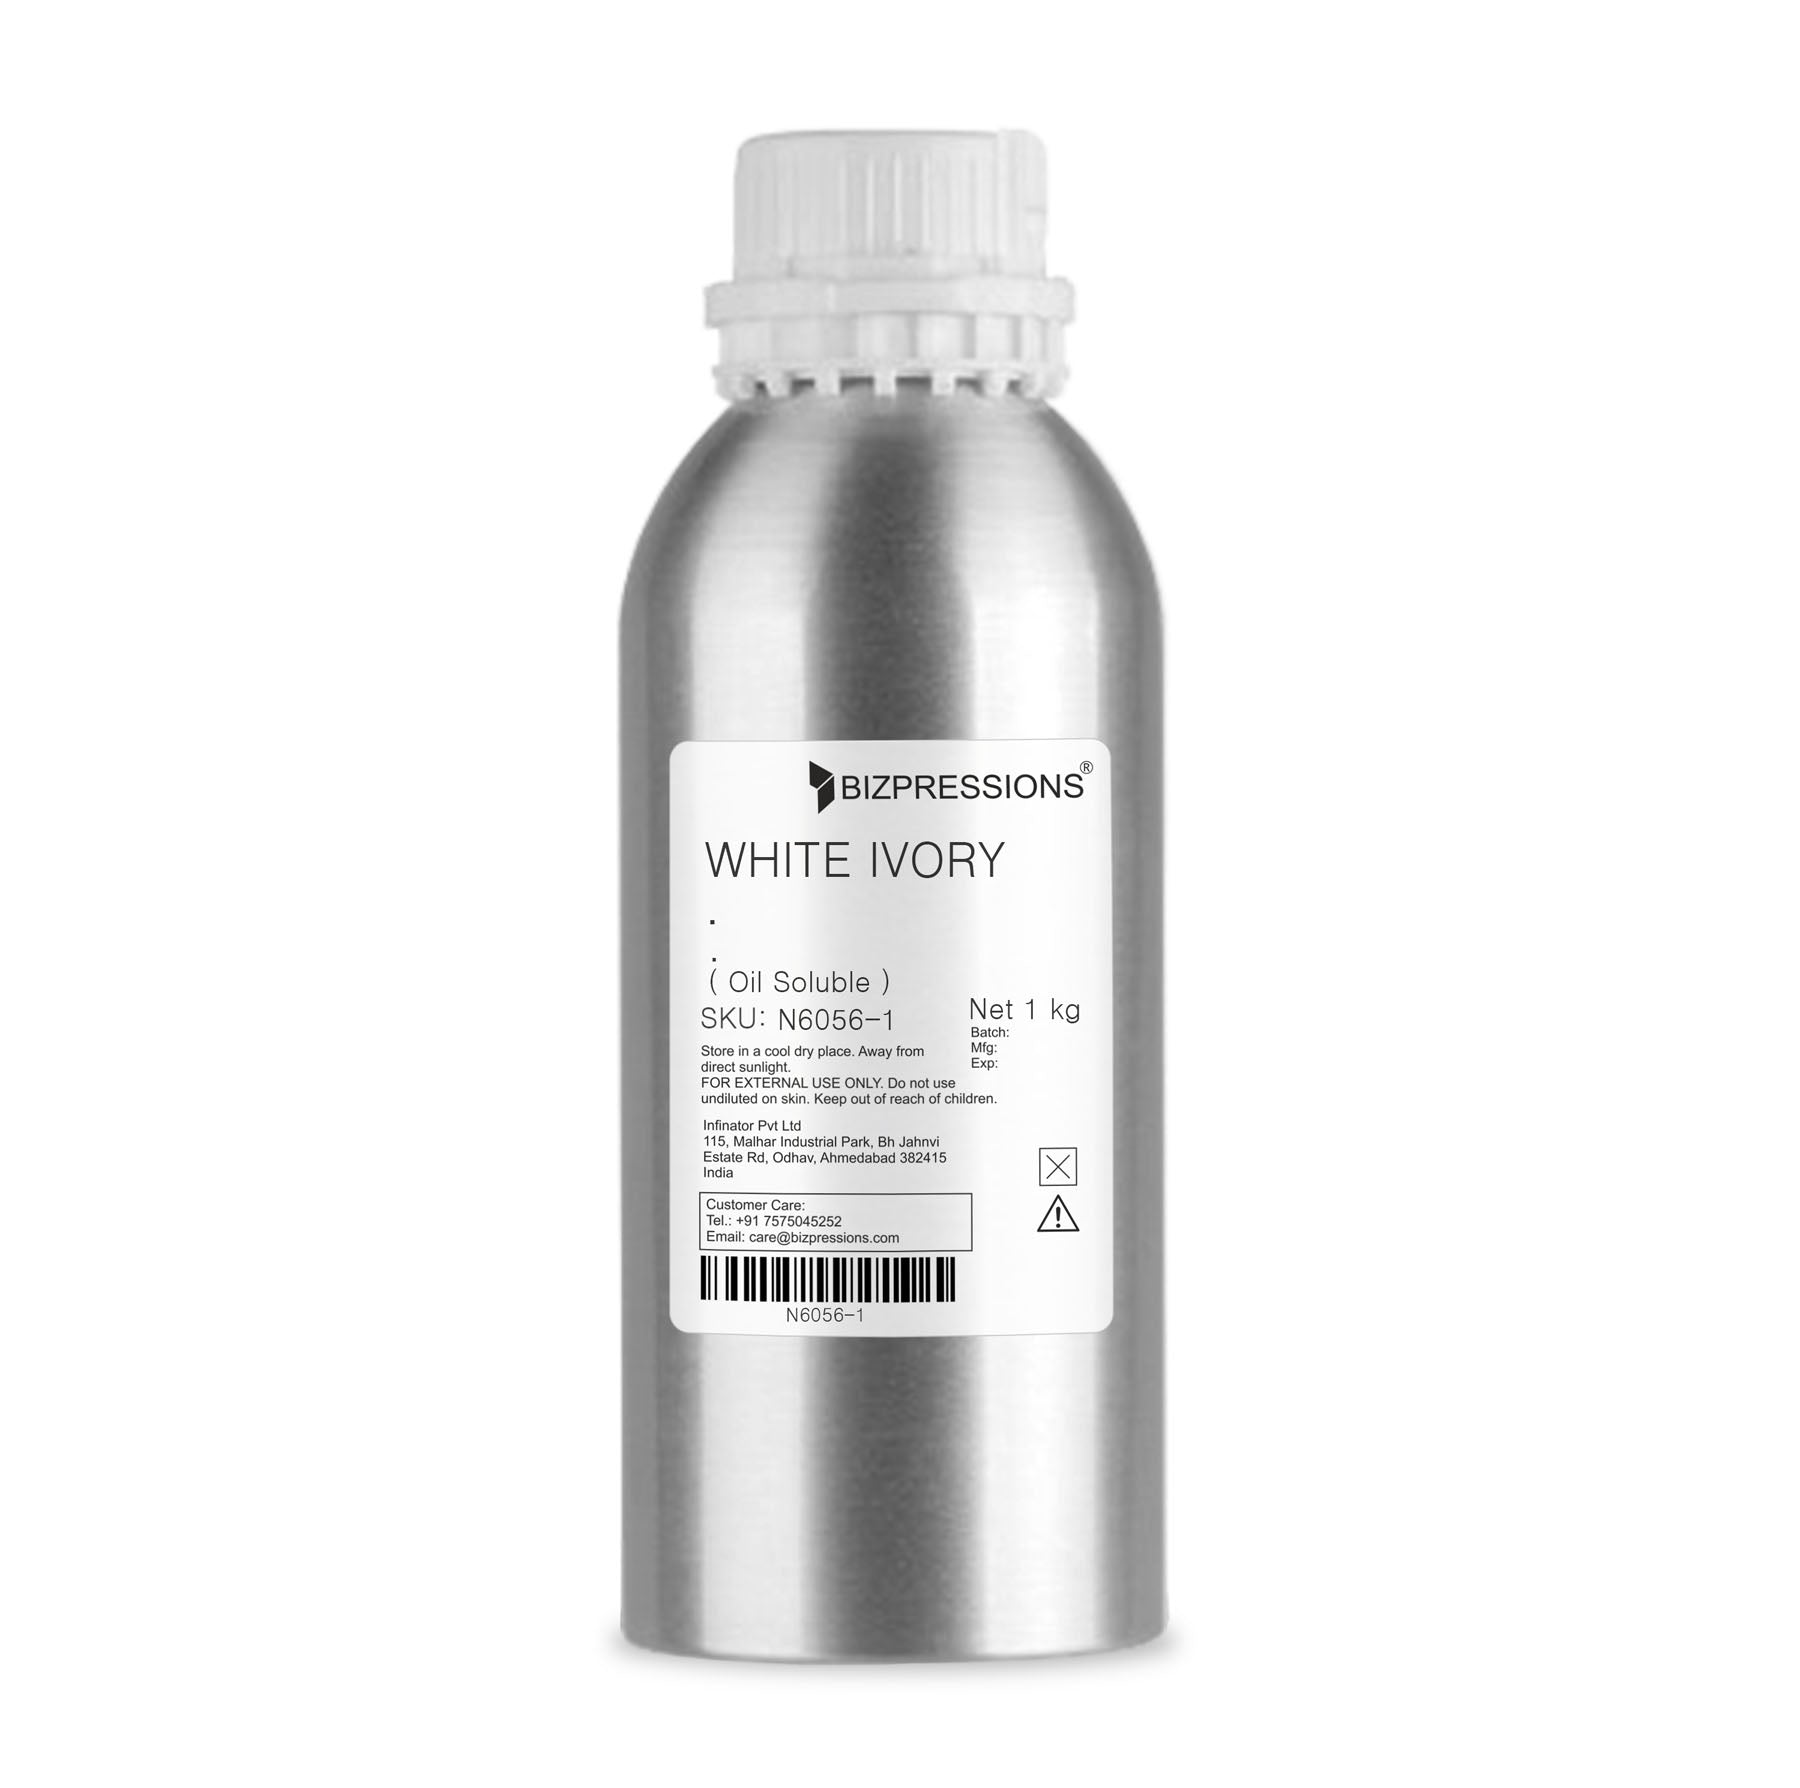 WHITE IVORY - Fragrance ( Oil Soluble ) - 1 kg